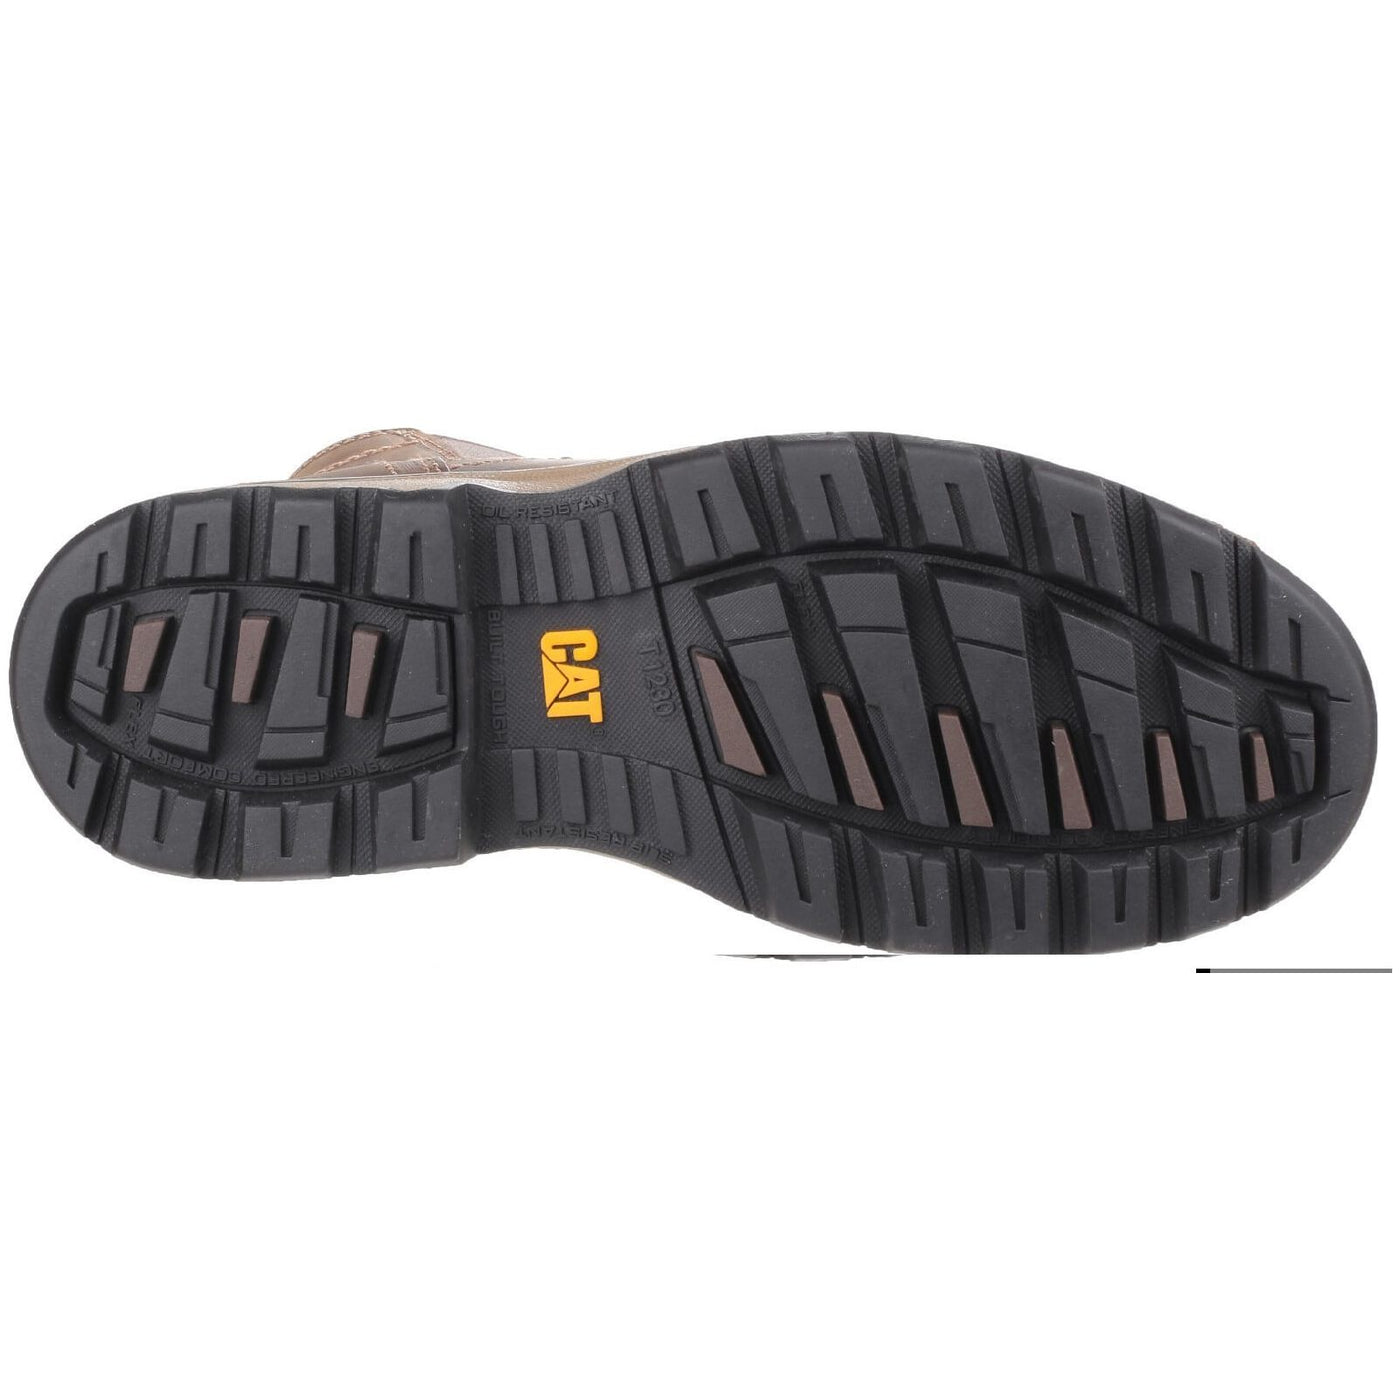 Caterpillar Pelton Work Safety Boots-Dark Beige-4